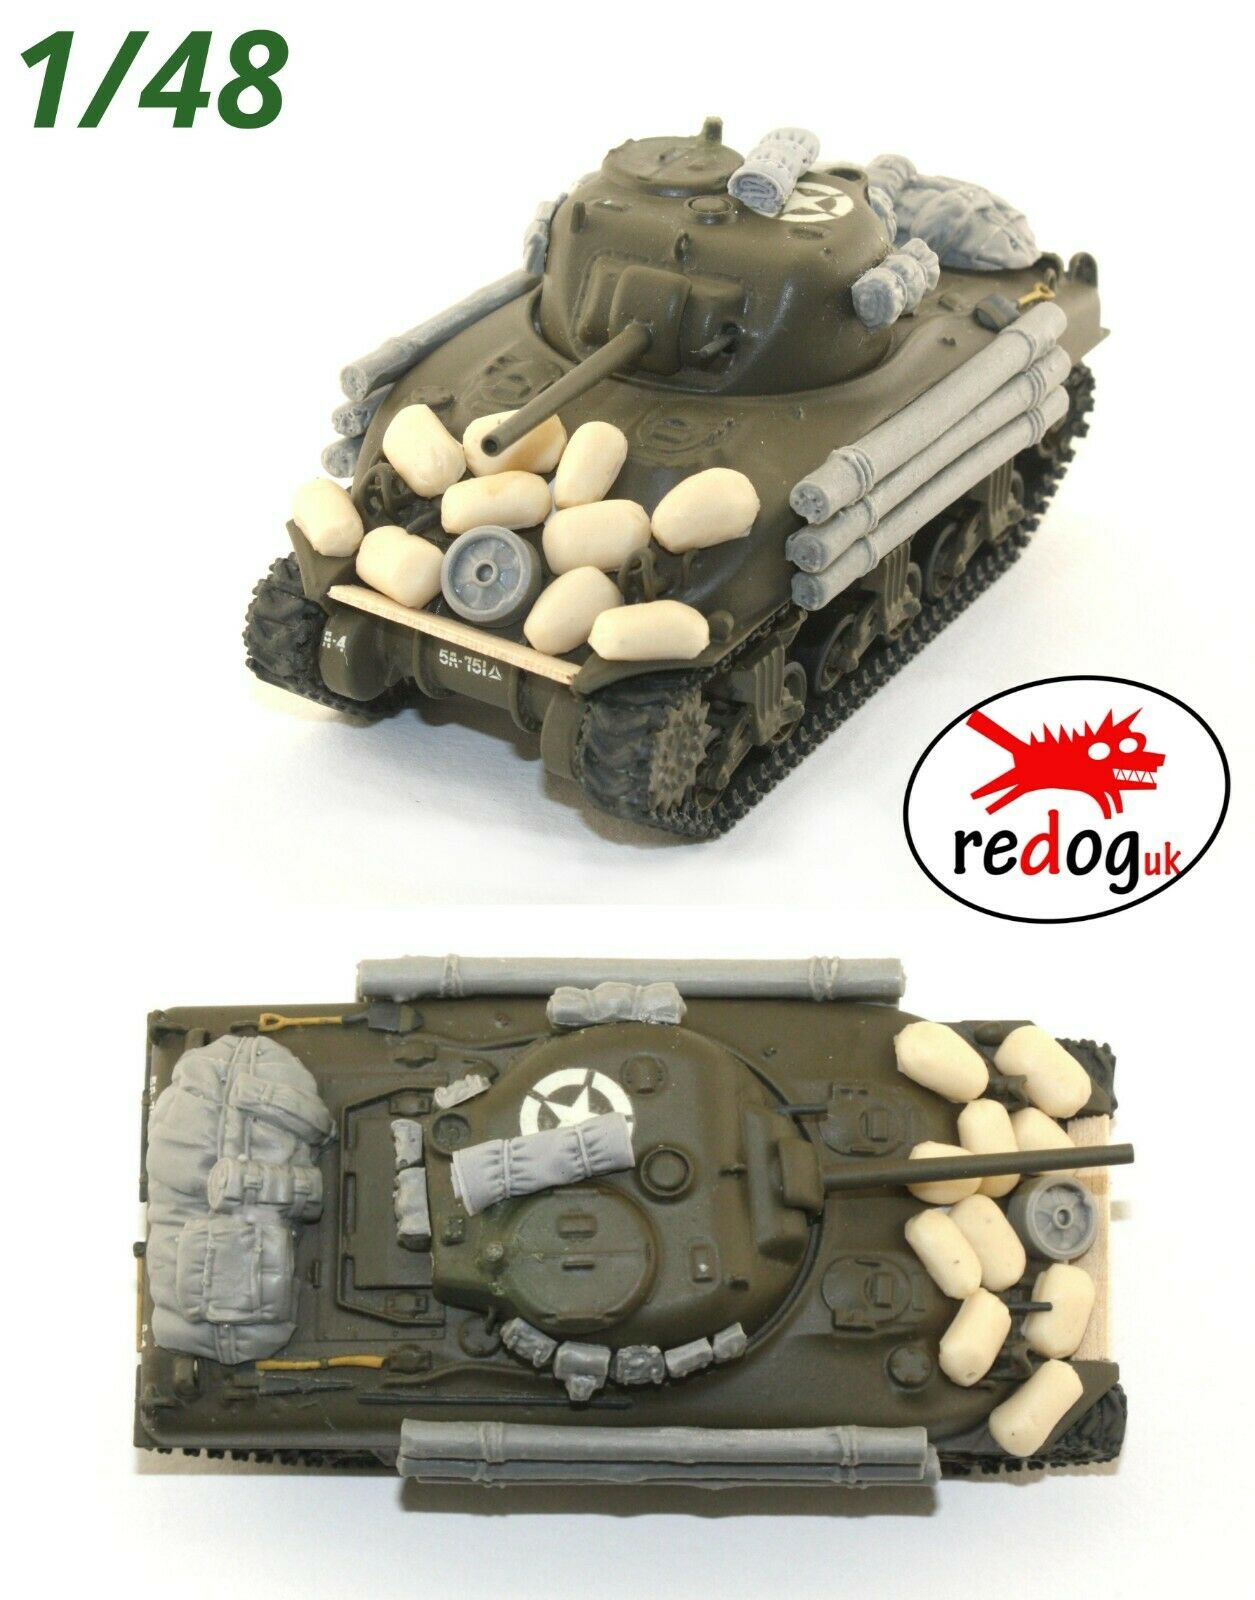 1/48 M4 US Sherman Tank Stowage Kit Accessories - redoguk